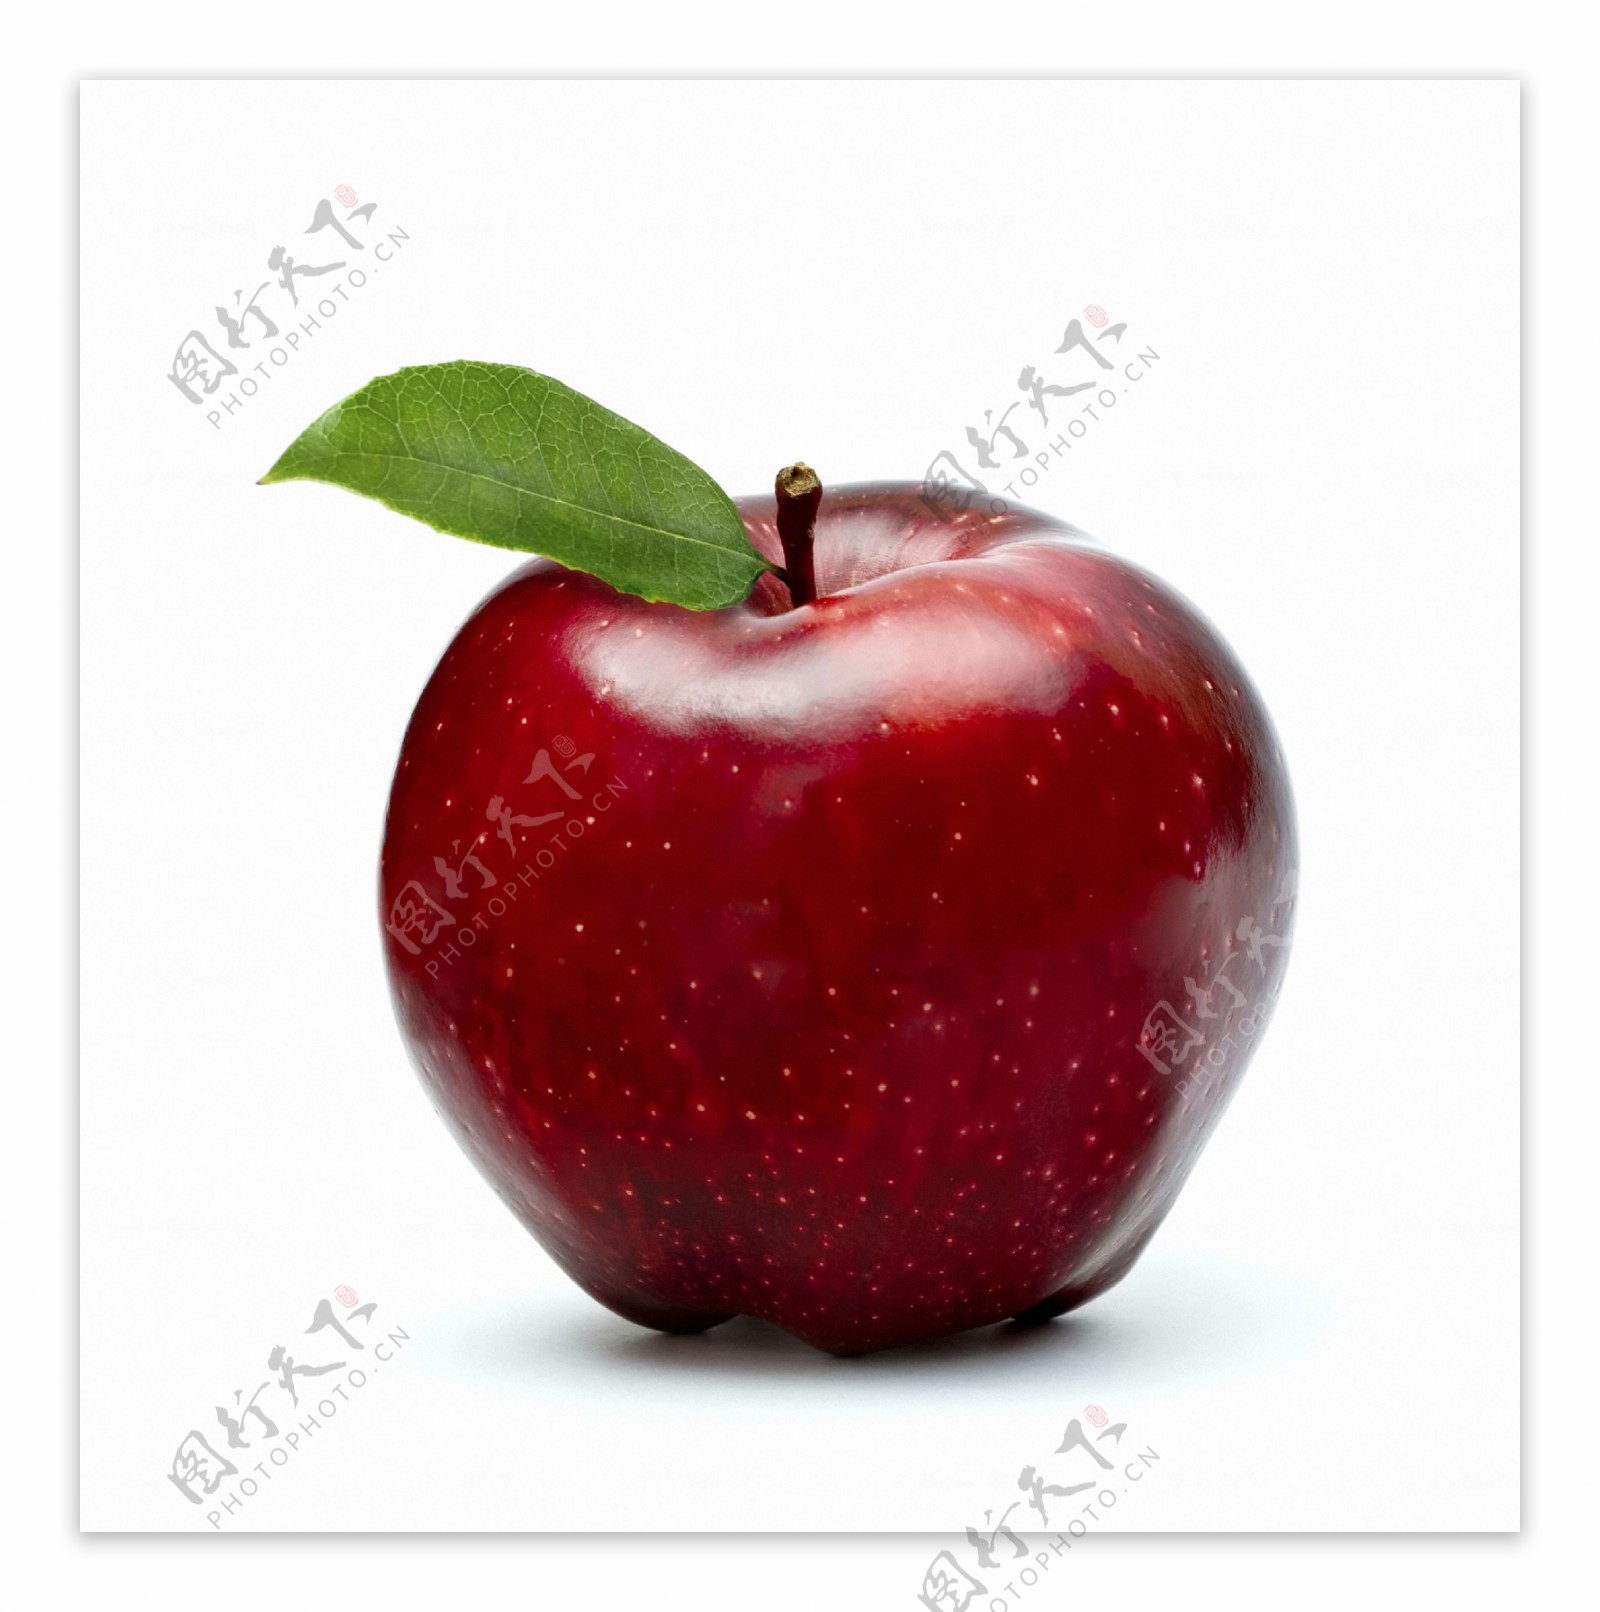 新鲜的红苹果图片素材